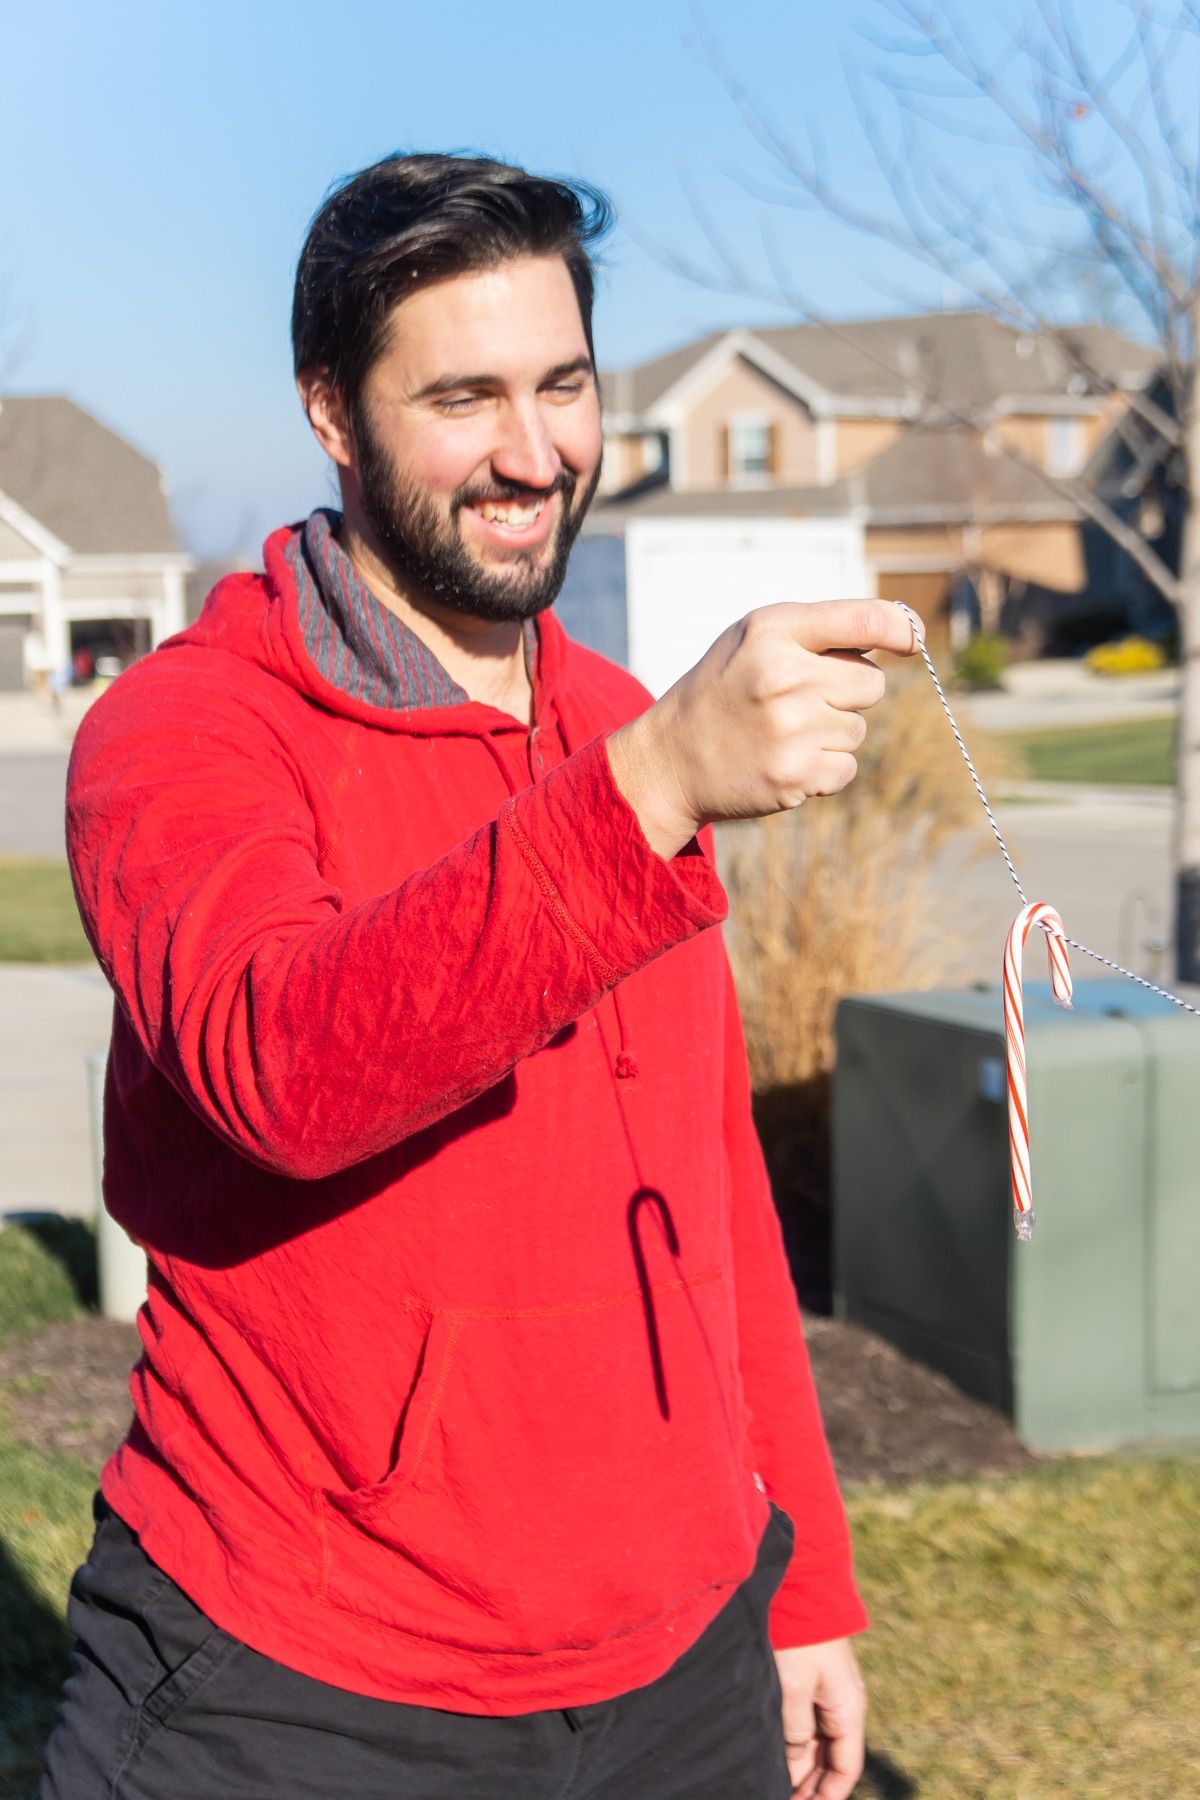 Cilvēks sarkanā sporta kreklā, turot konfektes spieķi uz auklas